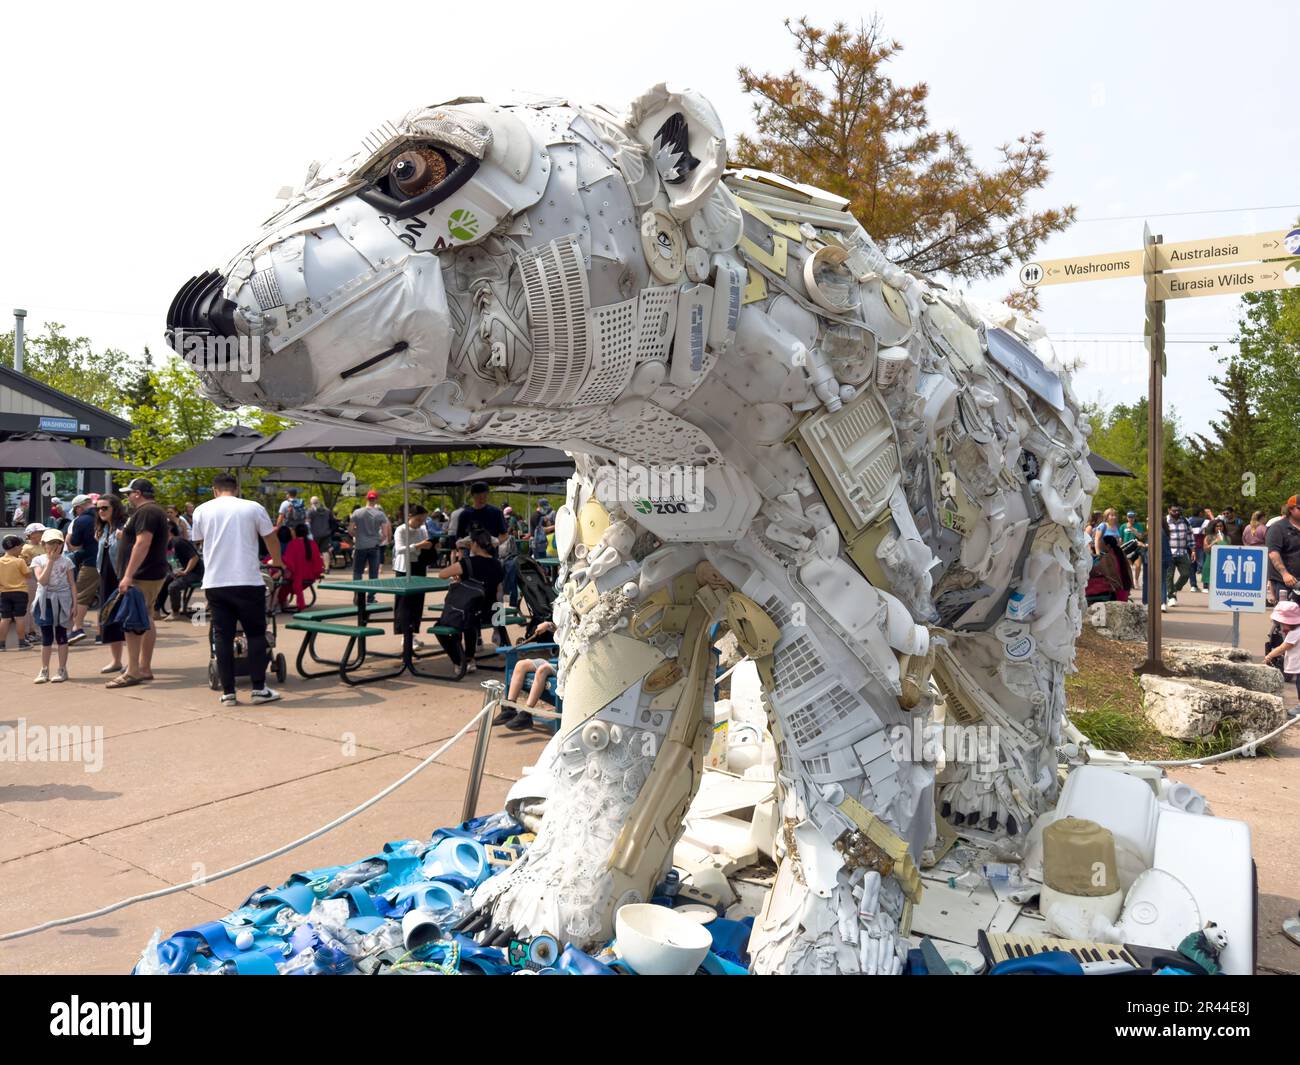 Eine Statue im Stil eines Eisbären im Zoo von Toronto. Die Kunstwerke bestehen aus recycelten Kunststoffgegenständen. Stockfoto